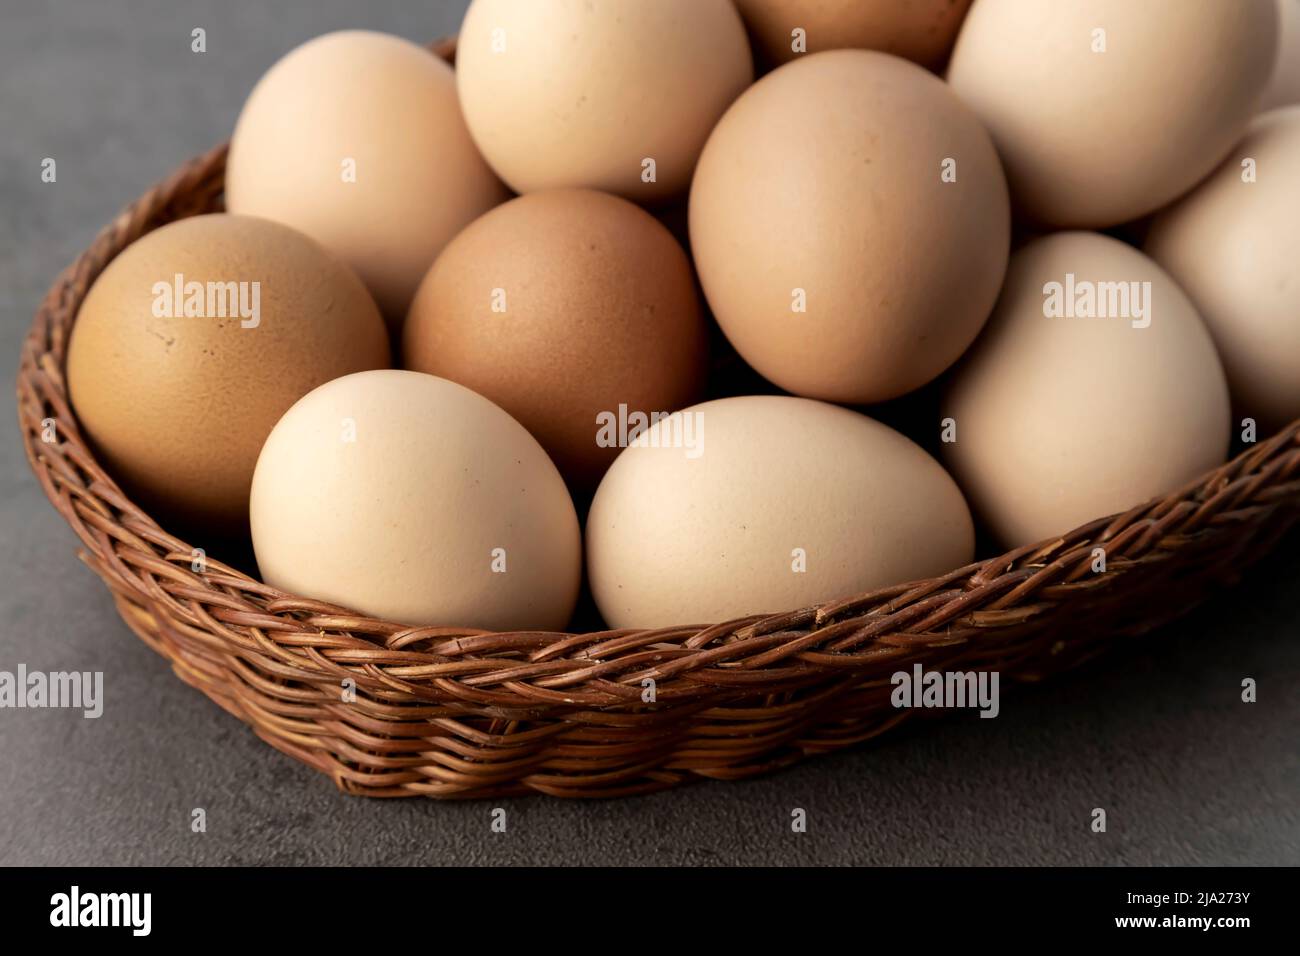 Huevos frescos en paquete foto de archivo. Imagen de pollo - 10438114